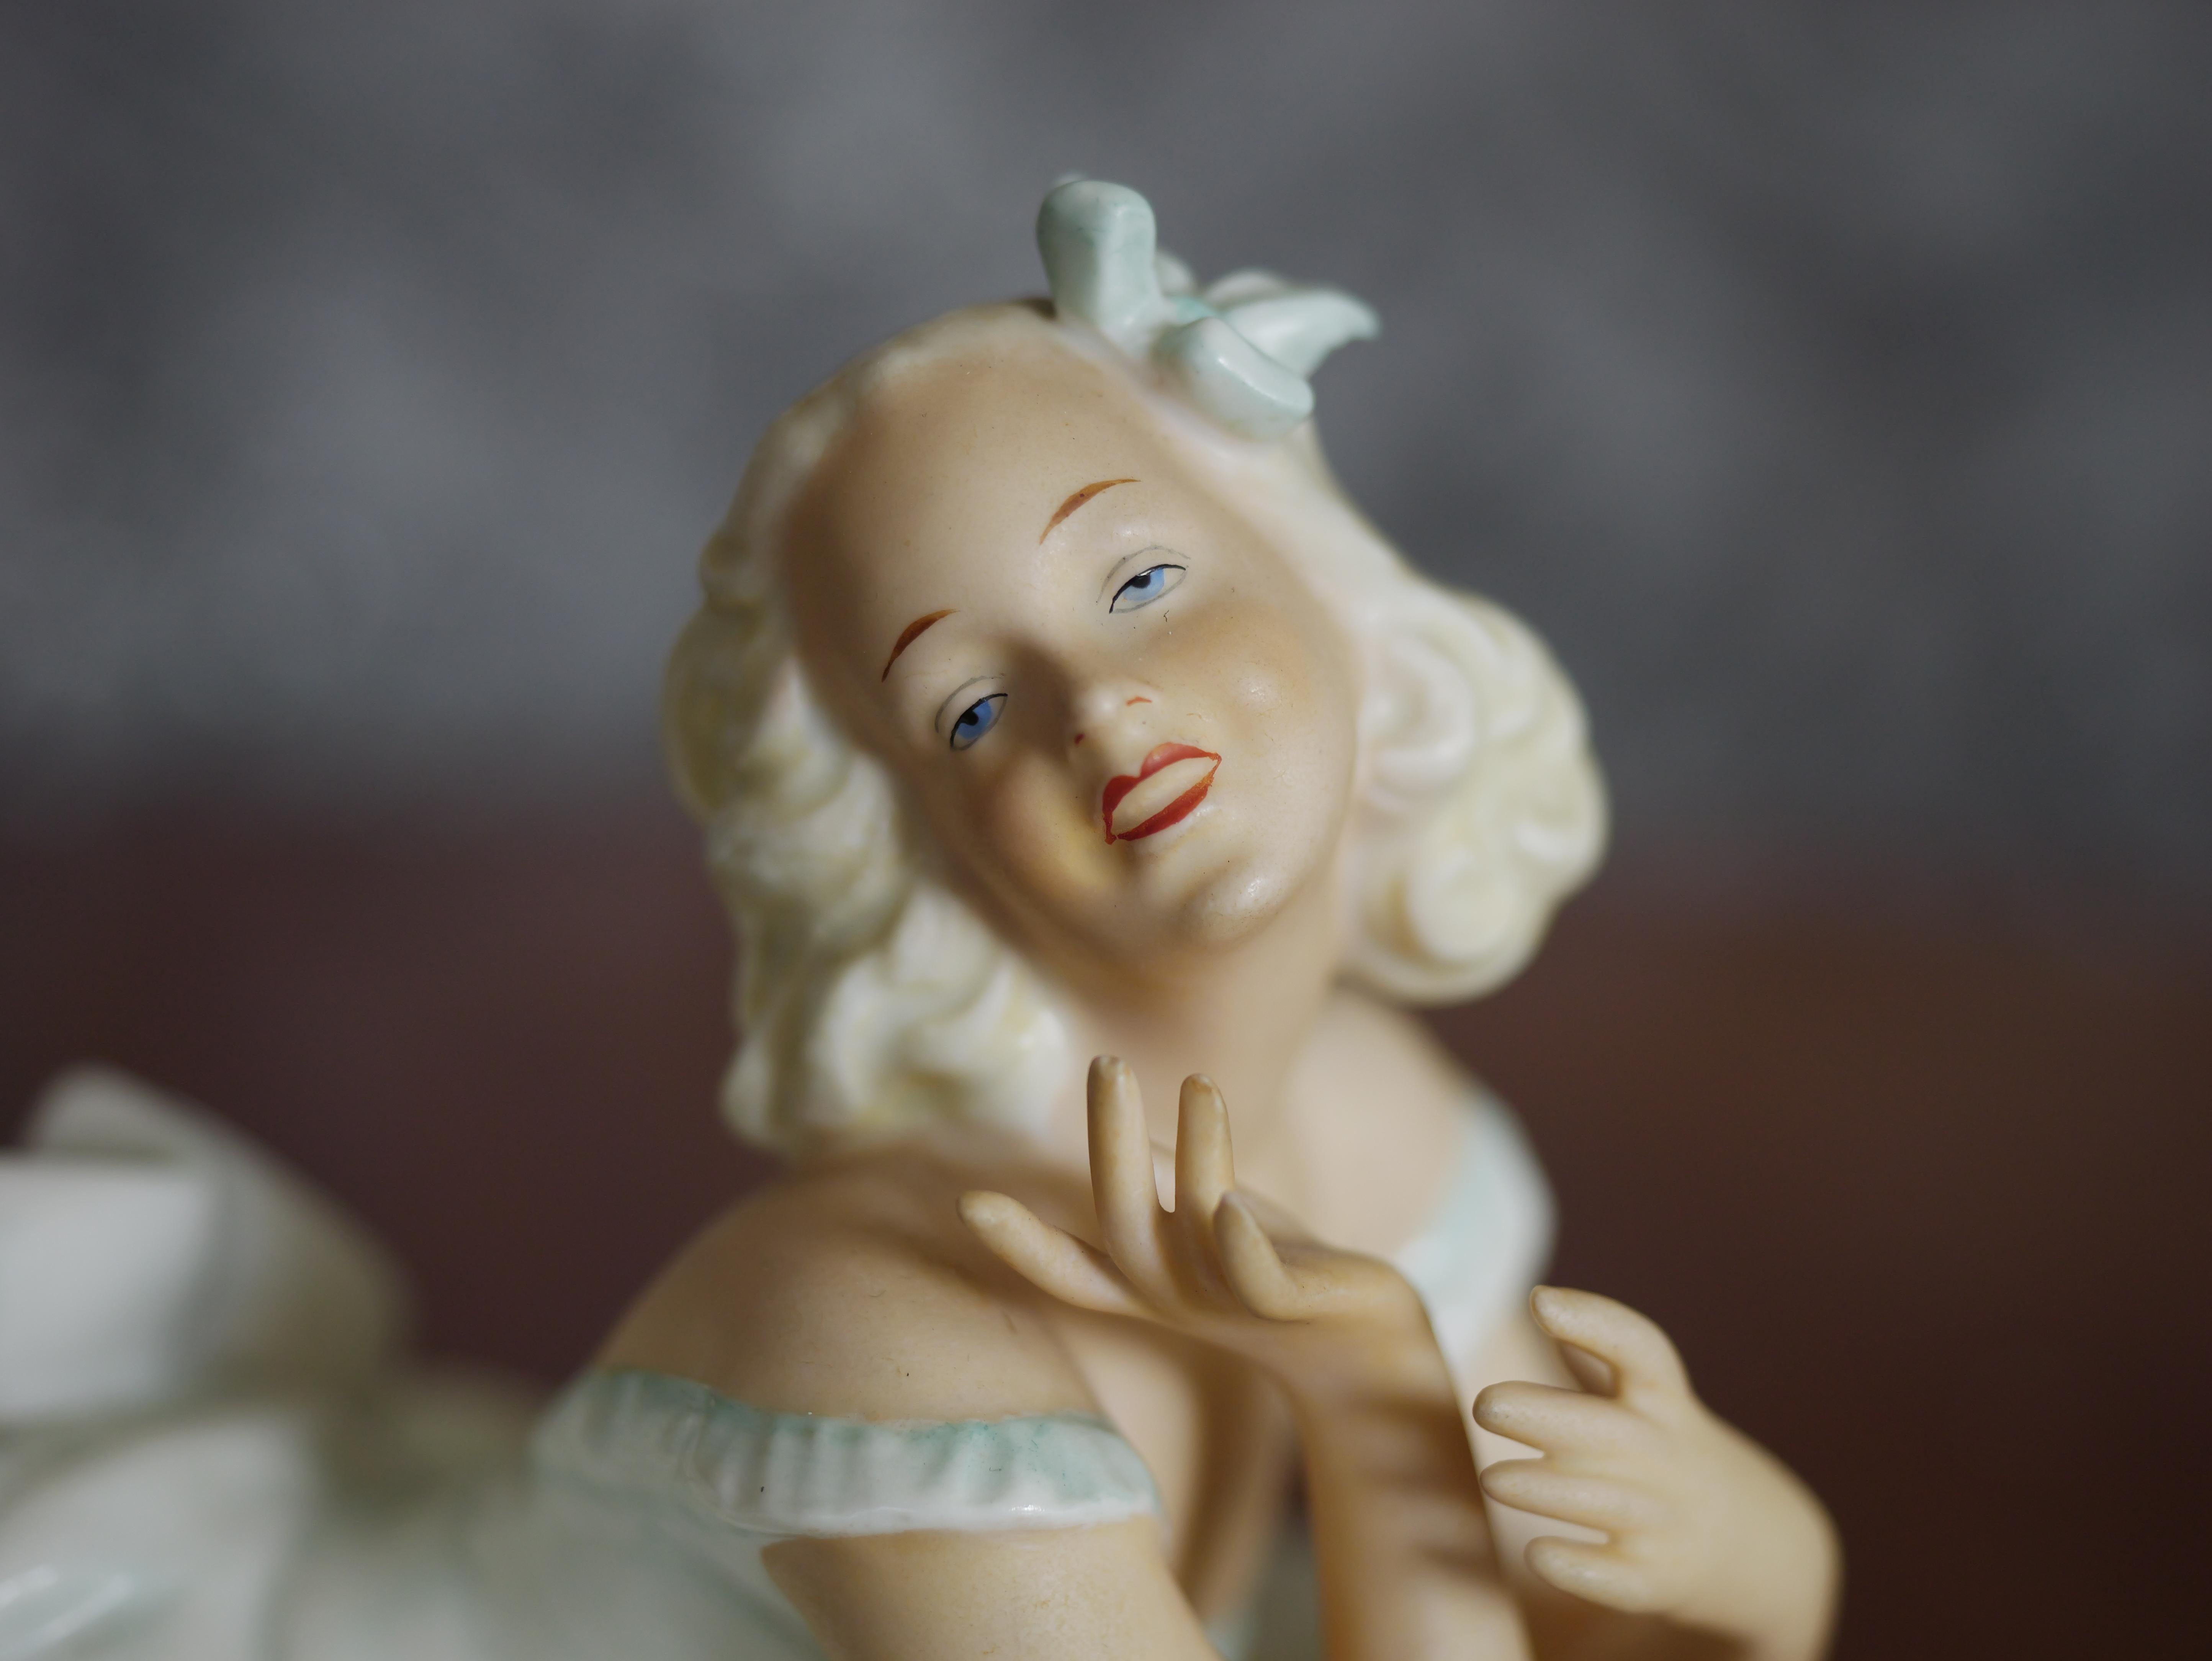 Diese Vintage-Porzellanfigur ist ein beeindruckendes Beispiel für die Kunstfertigkeit von Schaubach aus der Zeit zwischen 1945 und 1965. Die Figur zeigt eine Dame in anmutiger, liegender Haltung, elegant gekleidet in ein fließendes weißes Kleid. Die